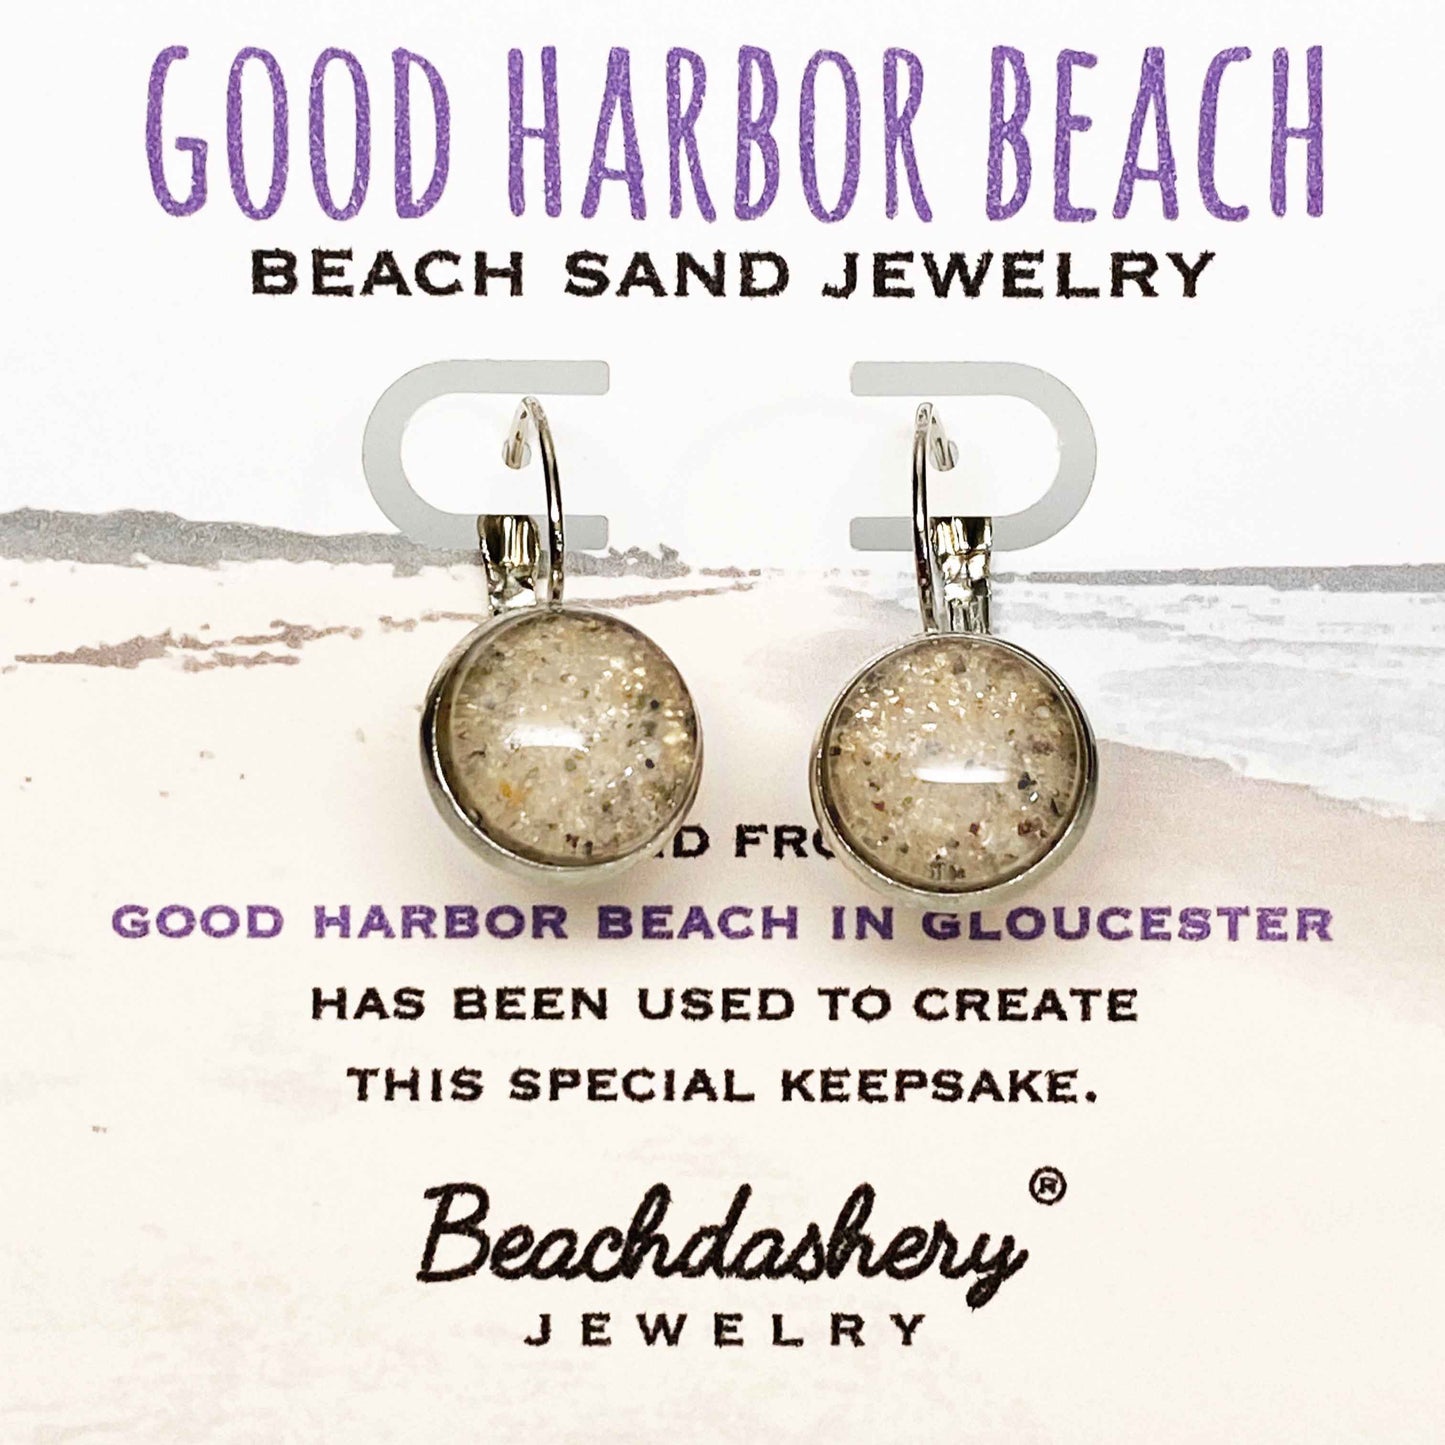 Good Harbor Beach Sand Jewelry Beachdashery® Jewelry